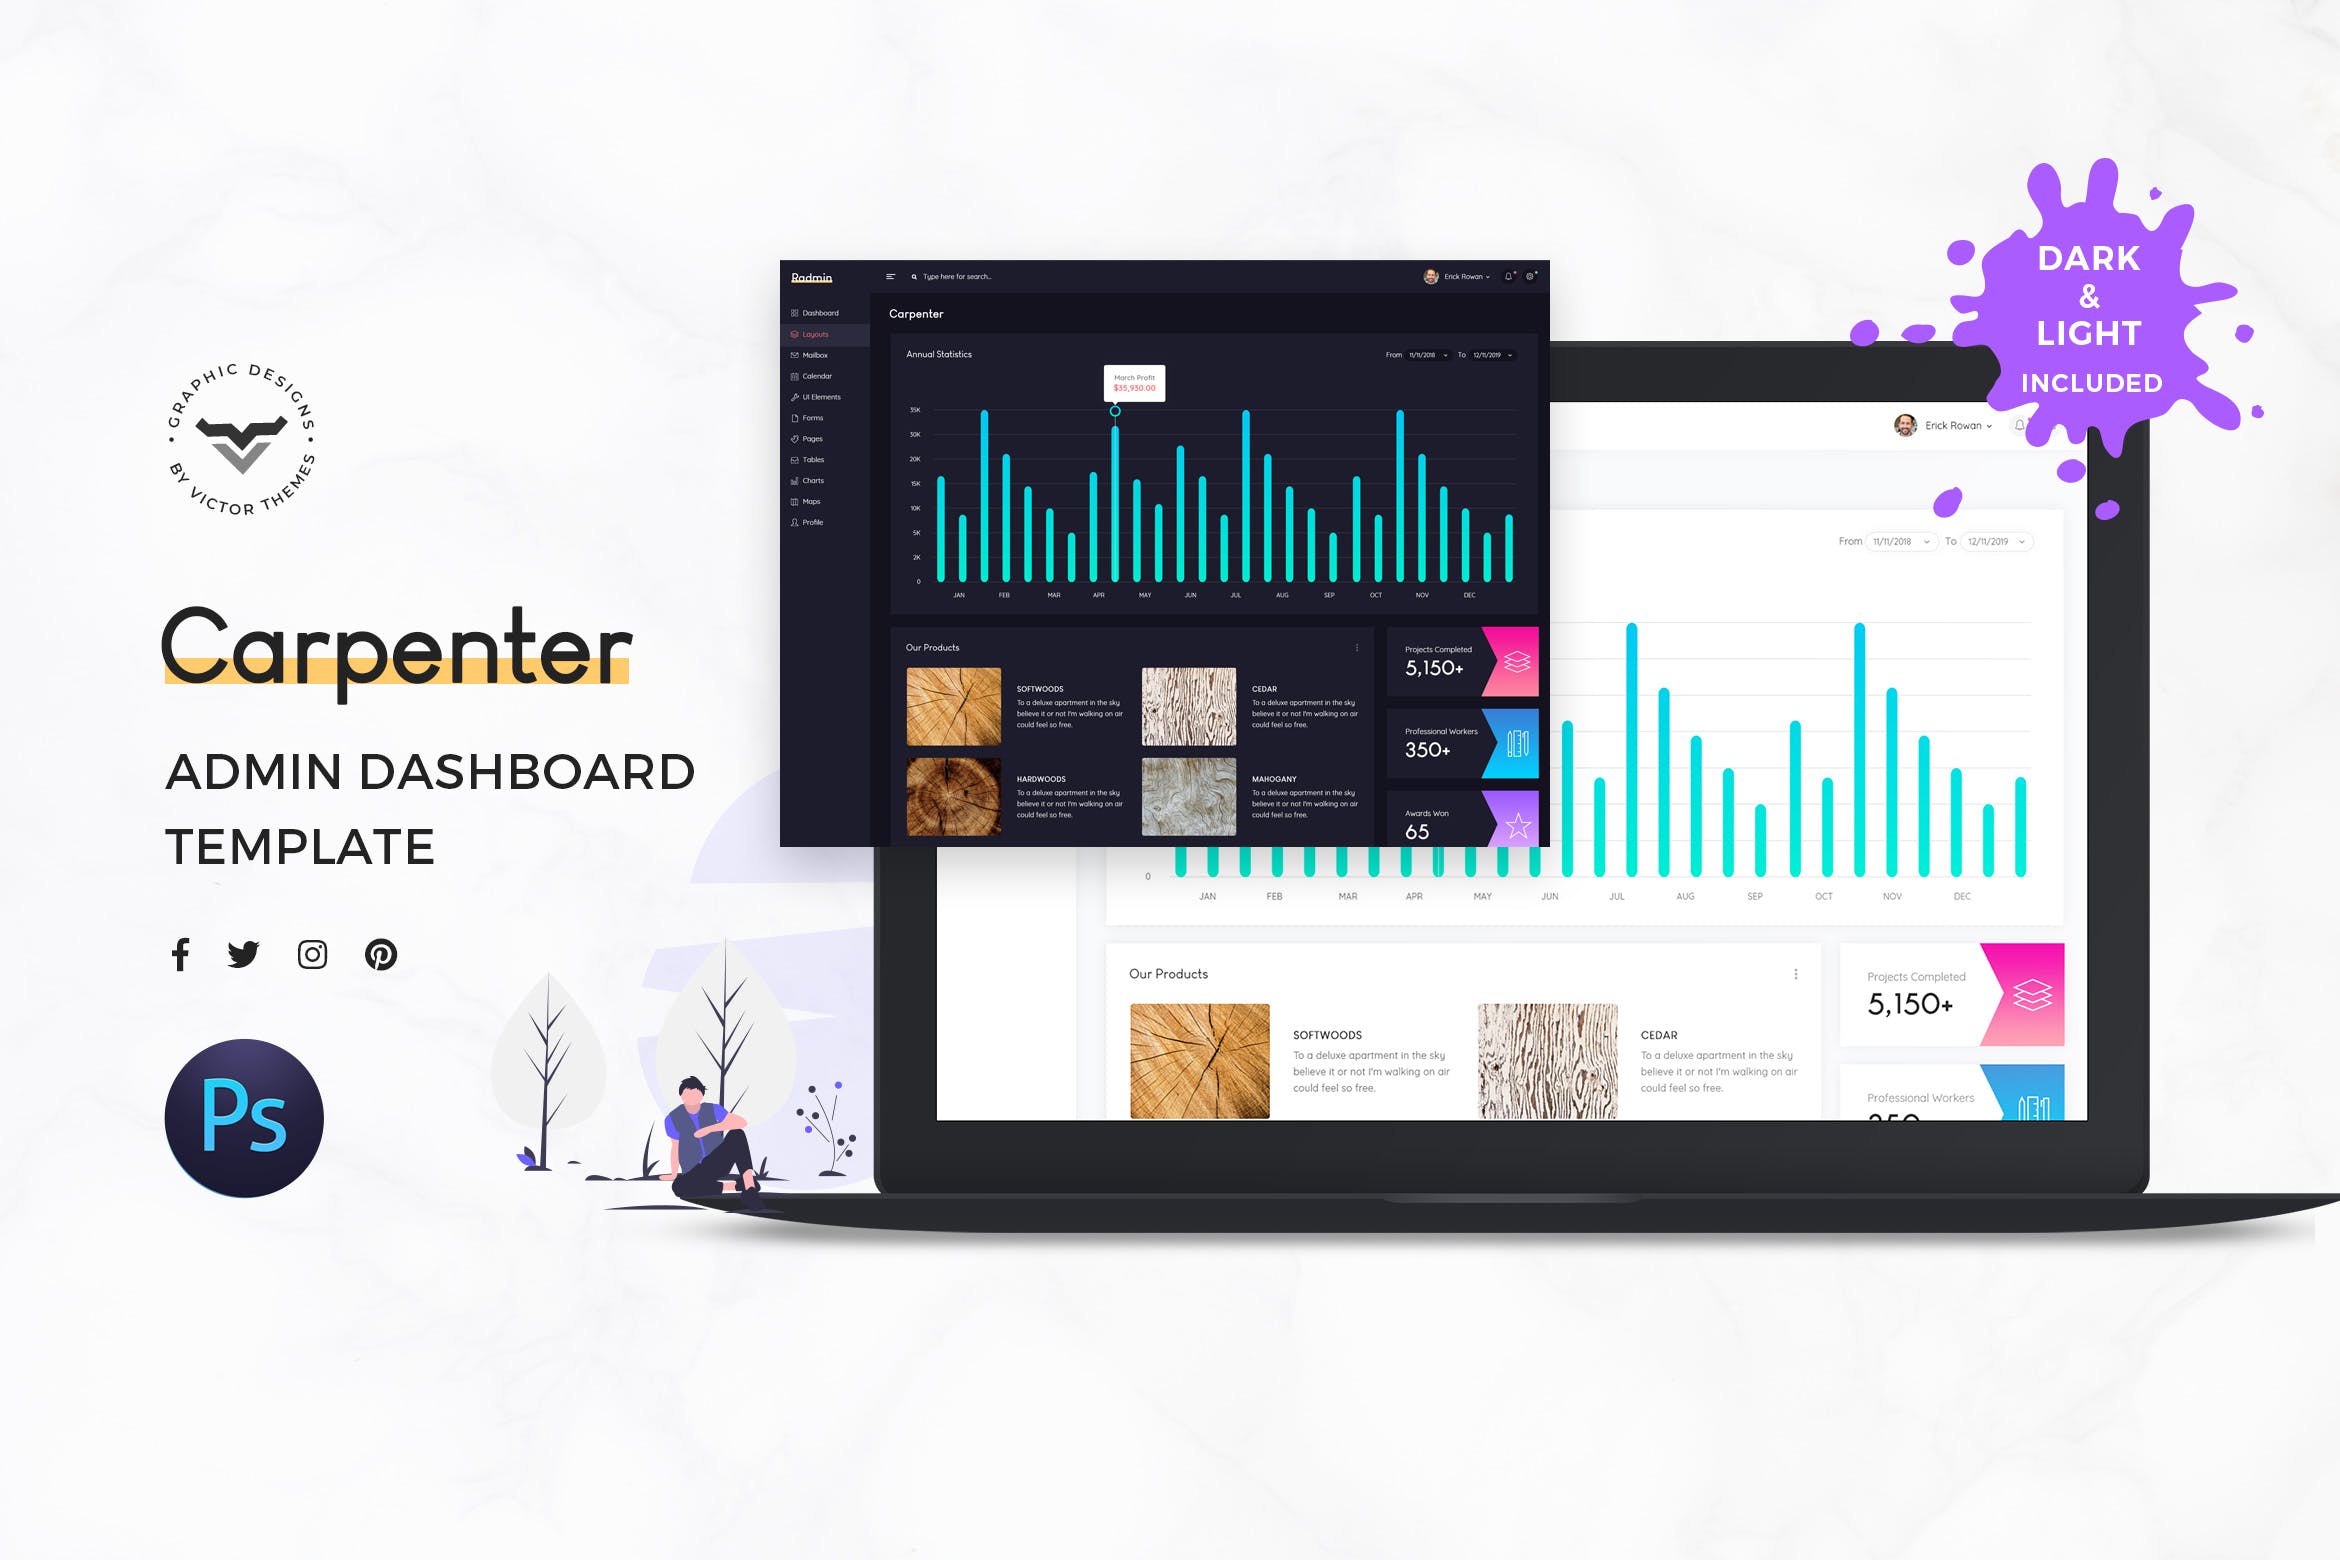 木匠实木工艺品家具品牌网站后台管理界面UI设计第一素材精选套件 Carpenter Admin Dashboard UI Kit插图